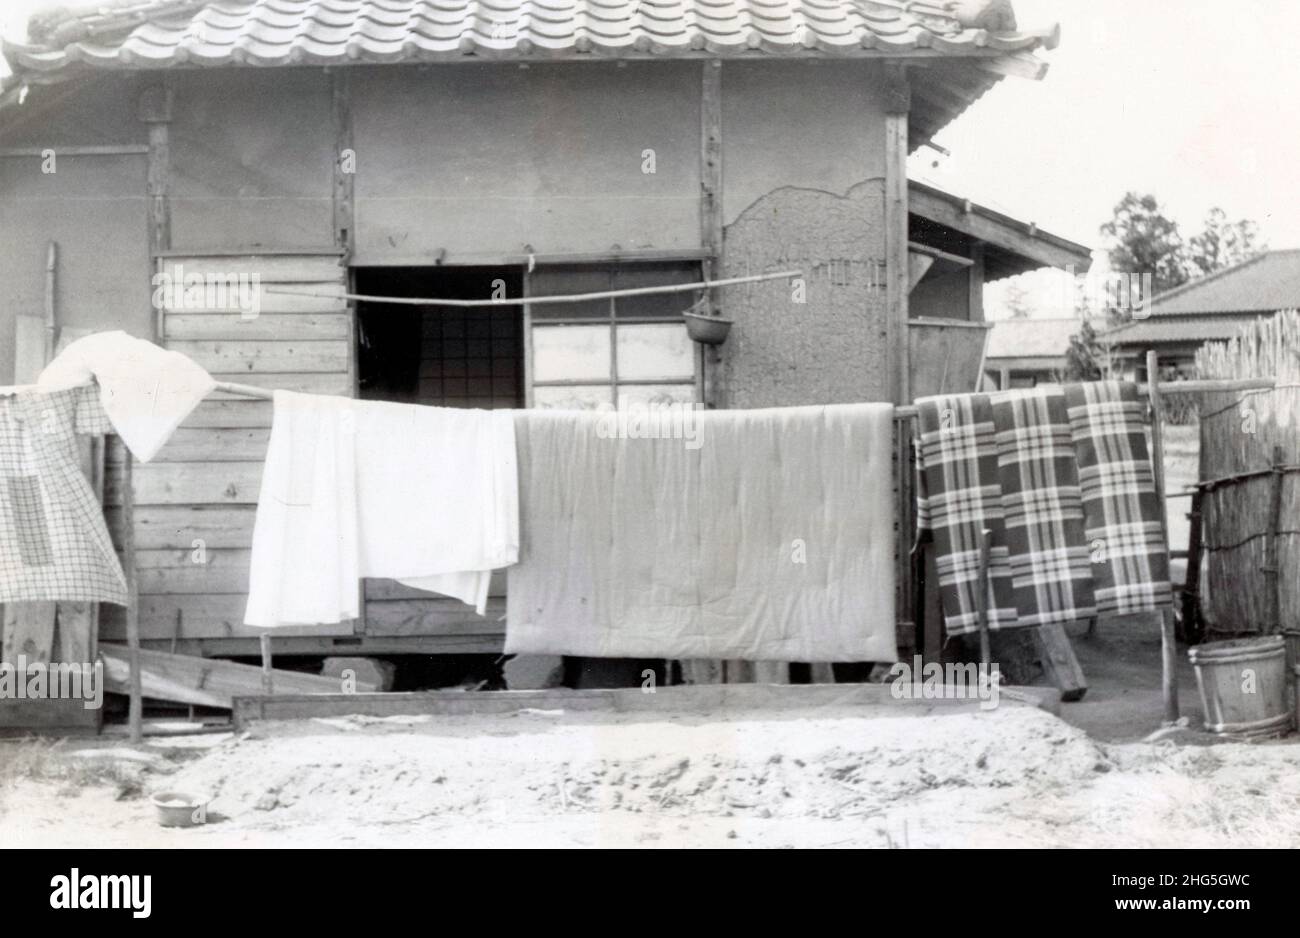 Fotografia antica del 1950 circa, lavanderia appeso ad asciugare in Giappone. Posizione esatta sconosciuta. FONTE: FOTOGRAFIA ORIGINALE Foto Stock